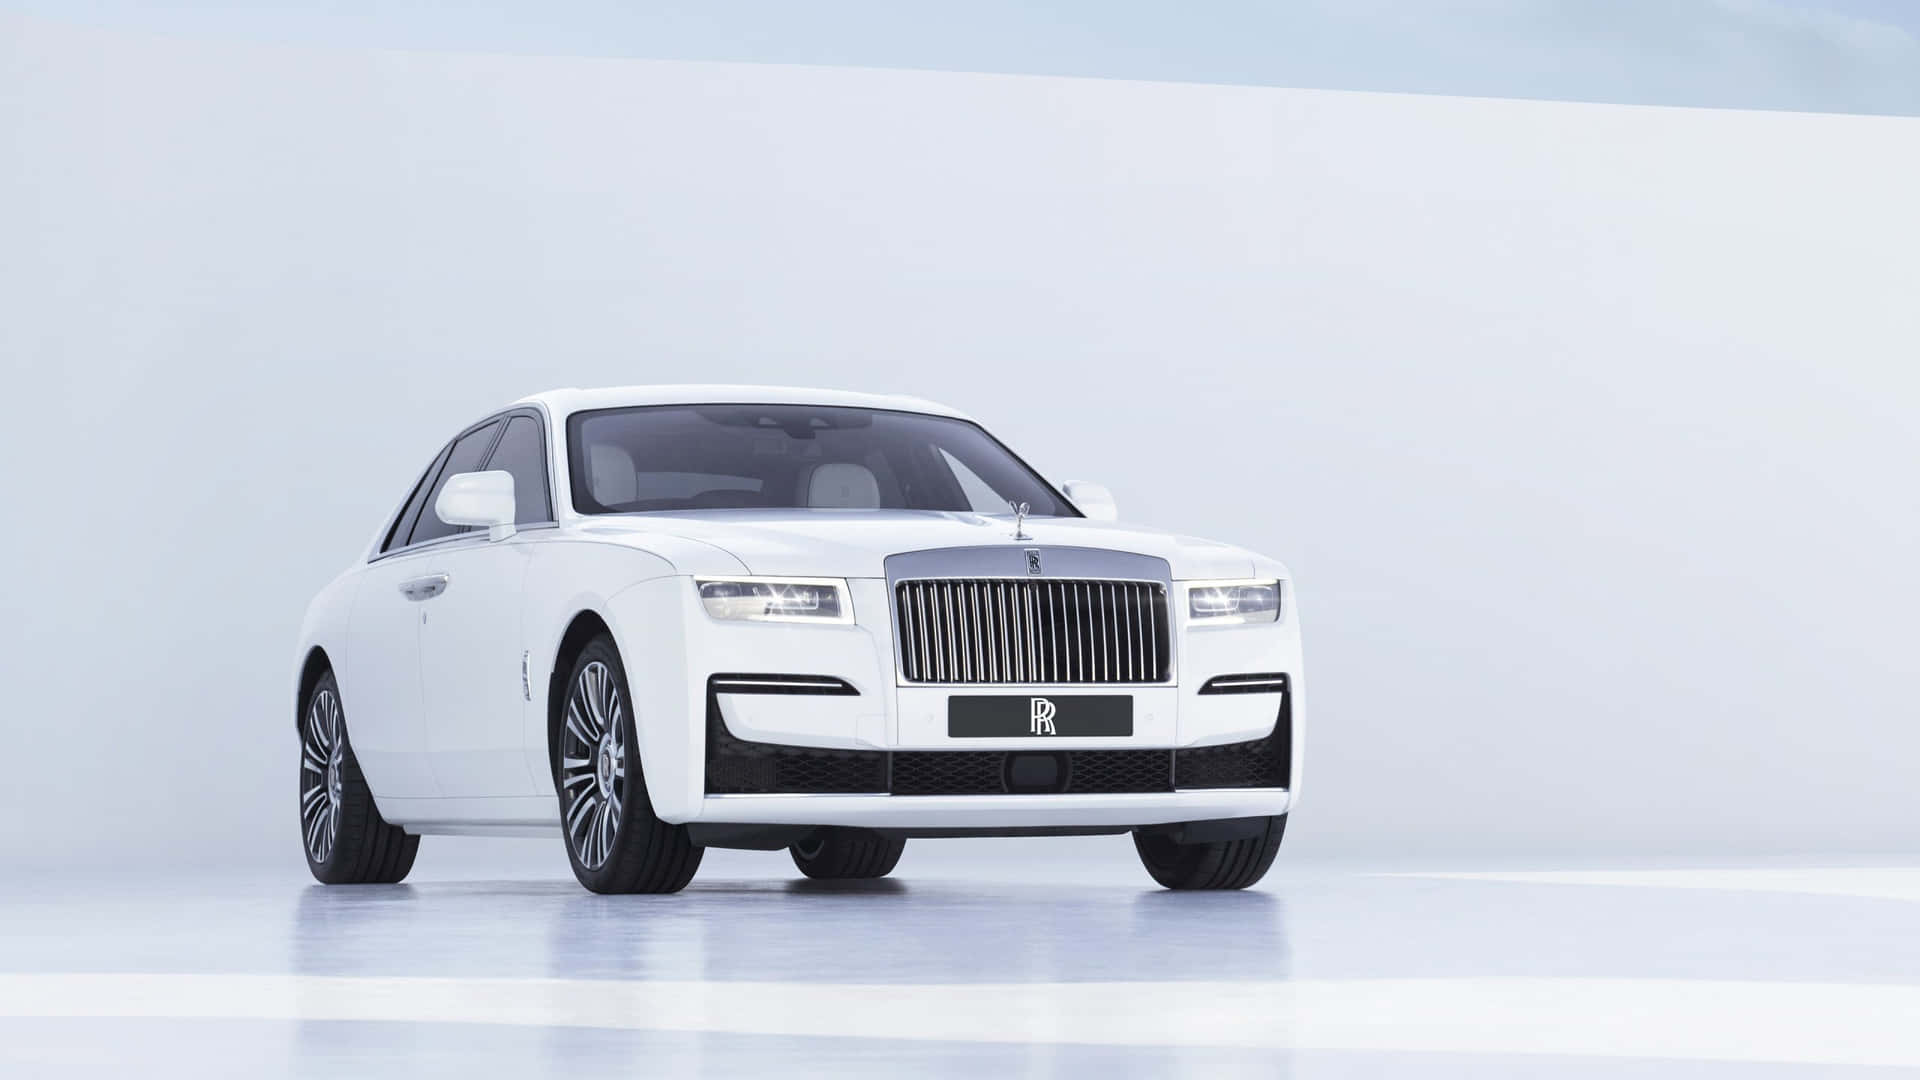 Fondode Pantalla: Rolls Royce De Lujo Exhibido Al Anochecer